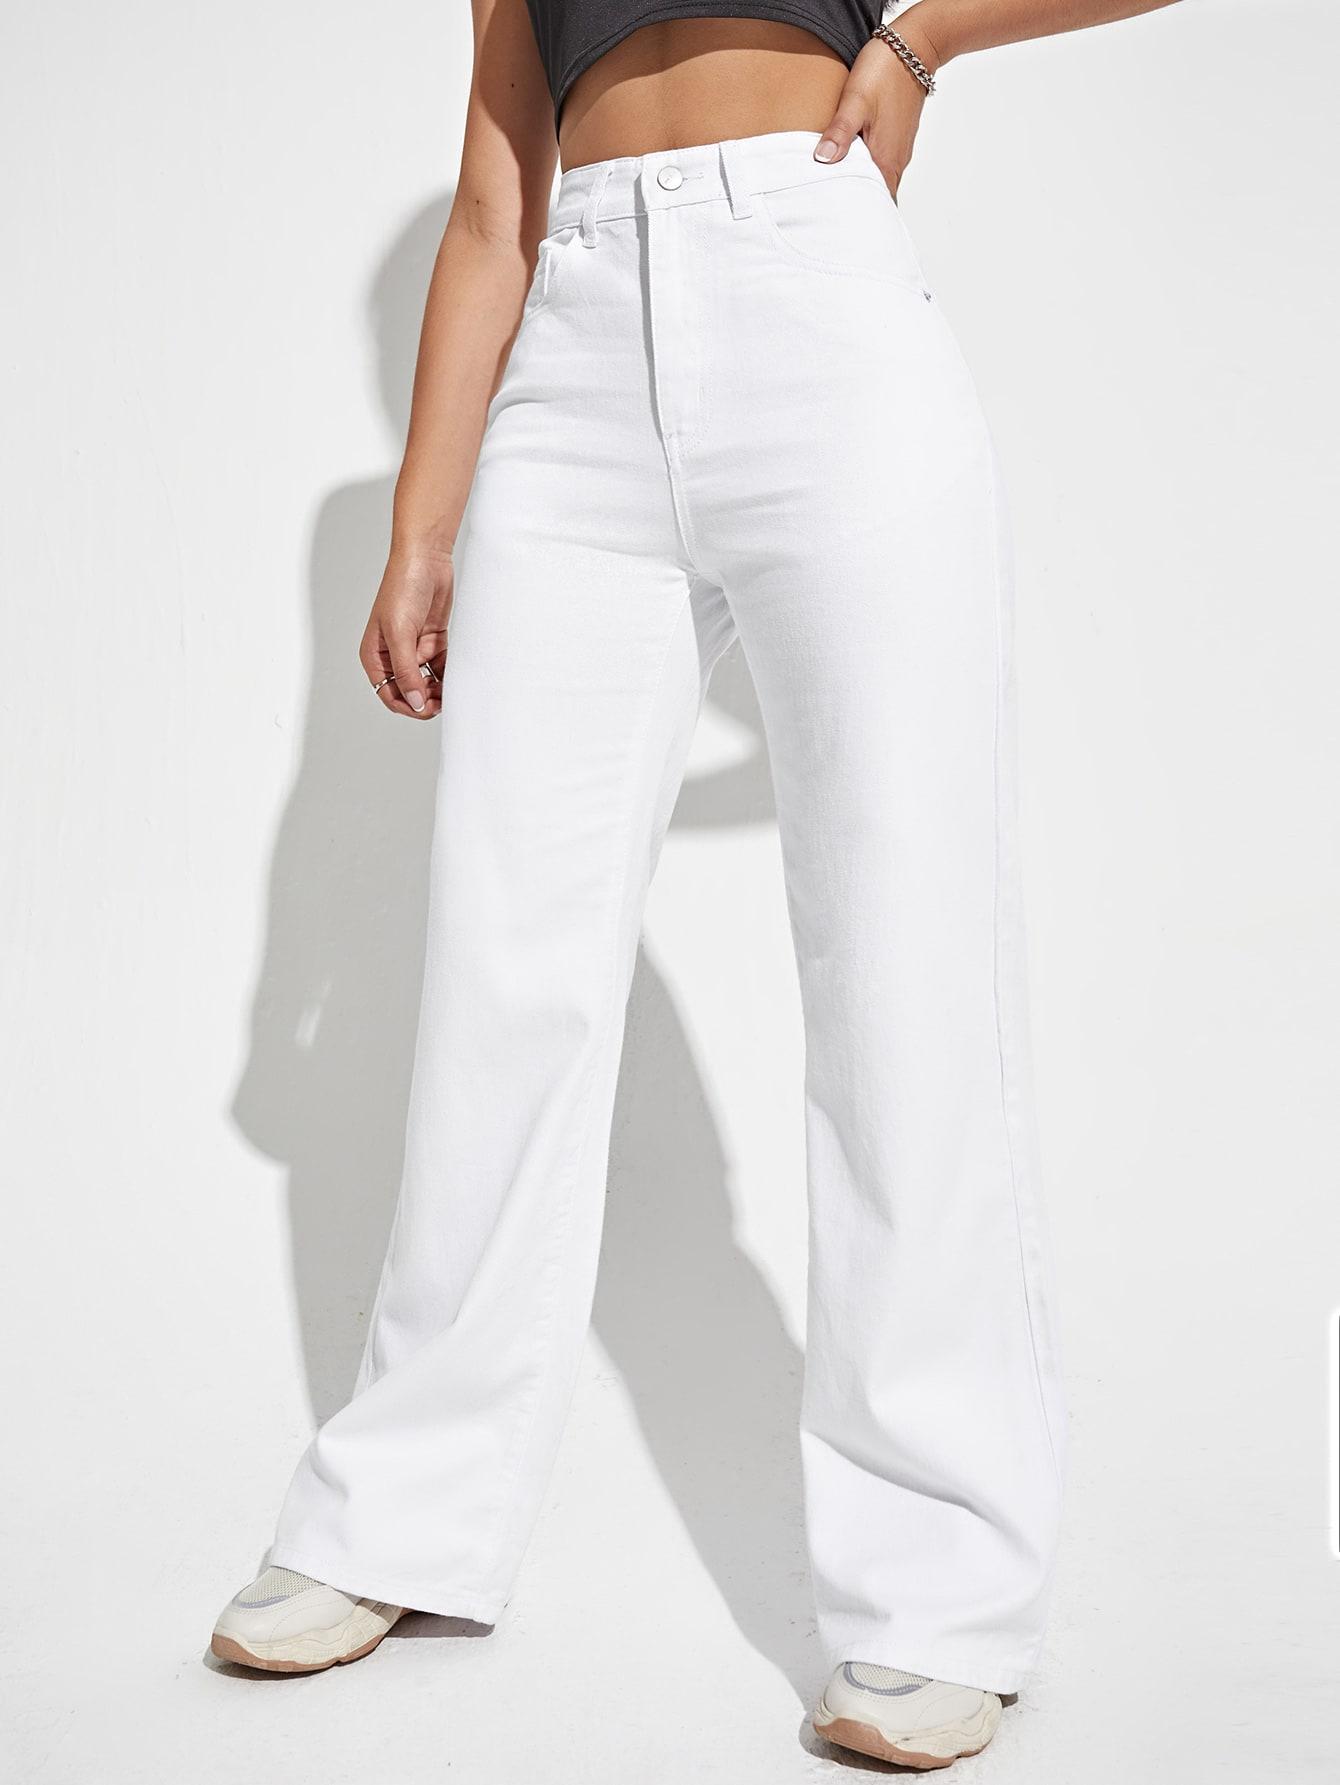 białe proste spodnie jeans wysoki stan